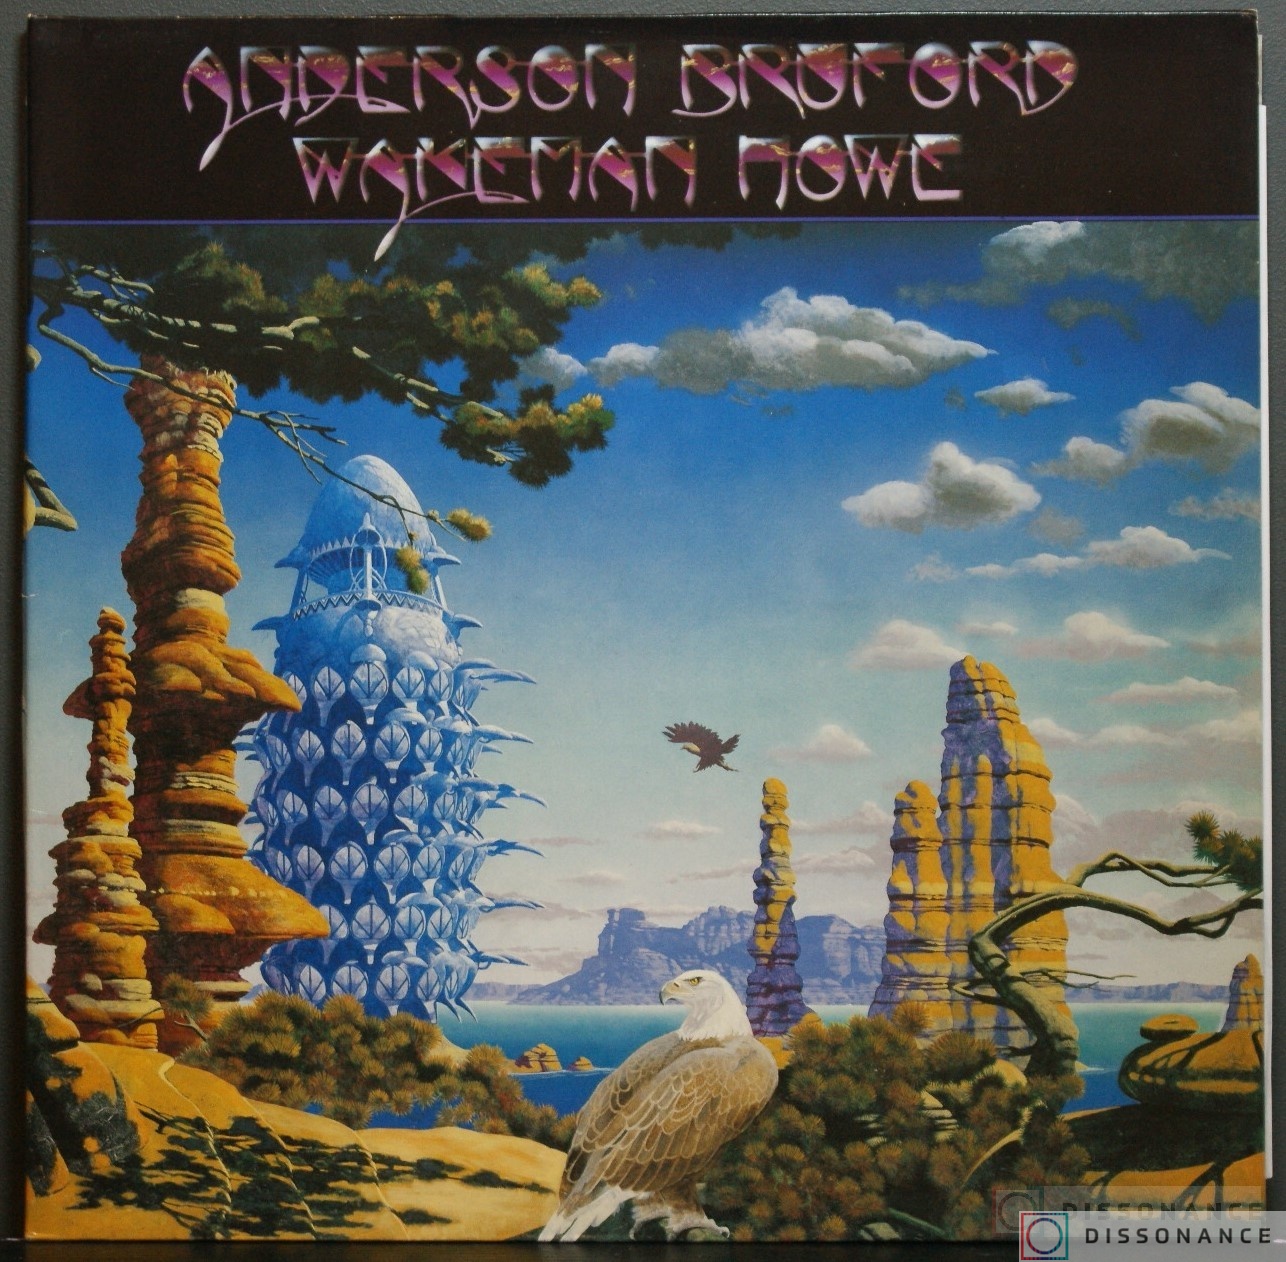 Виниловая пластинка Anderson Bruford Wakeman Howe - Anderson Bruford Wakeman Howe (1989) - фото обложки